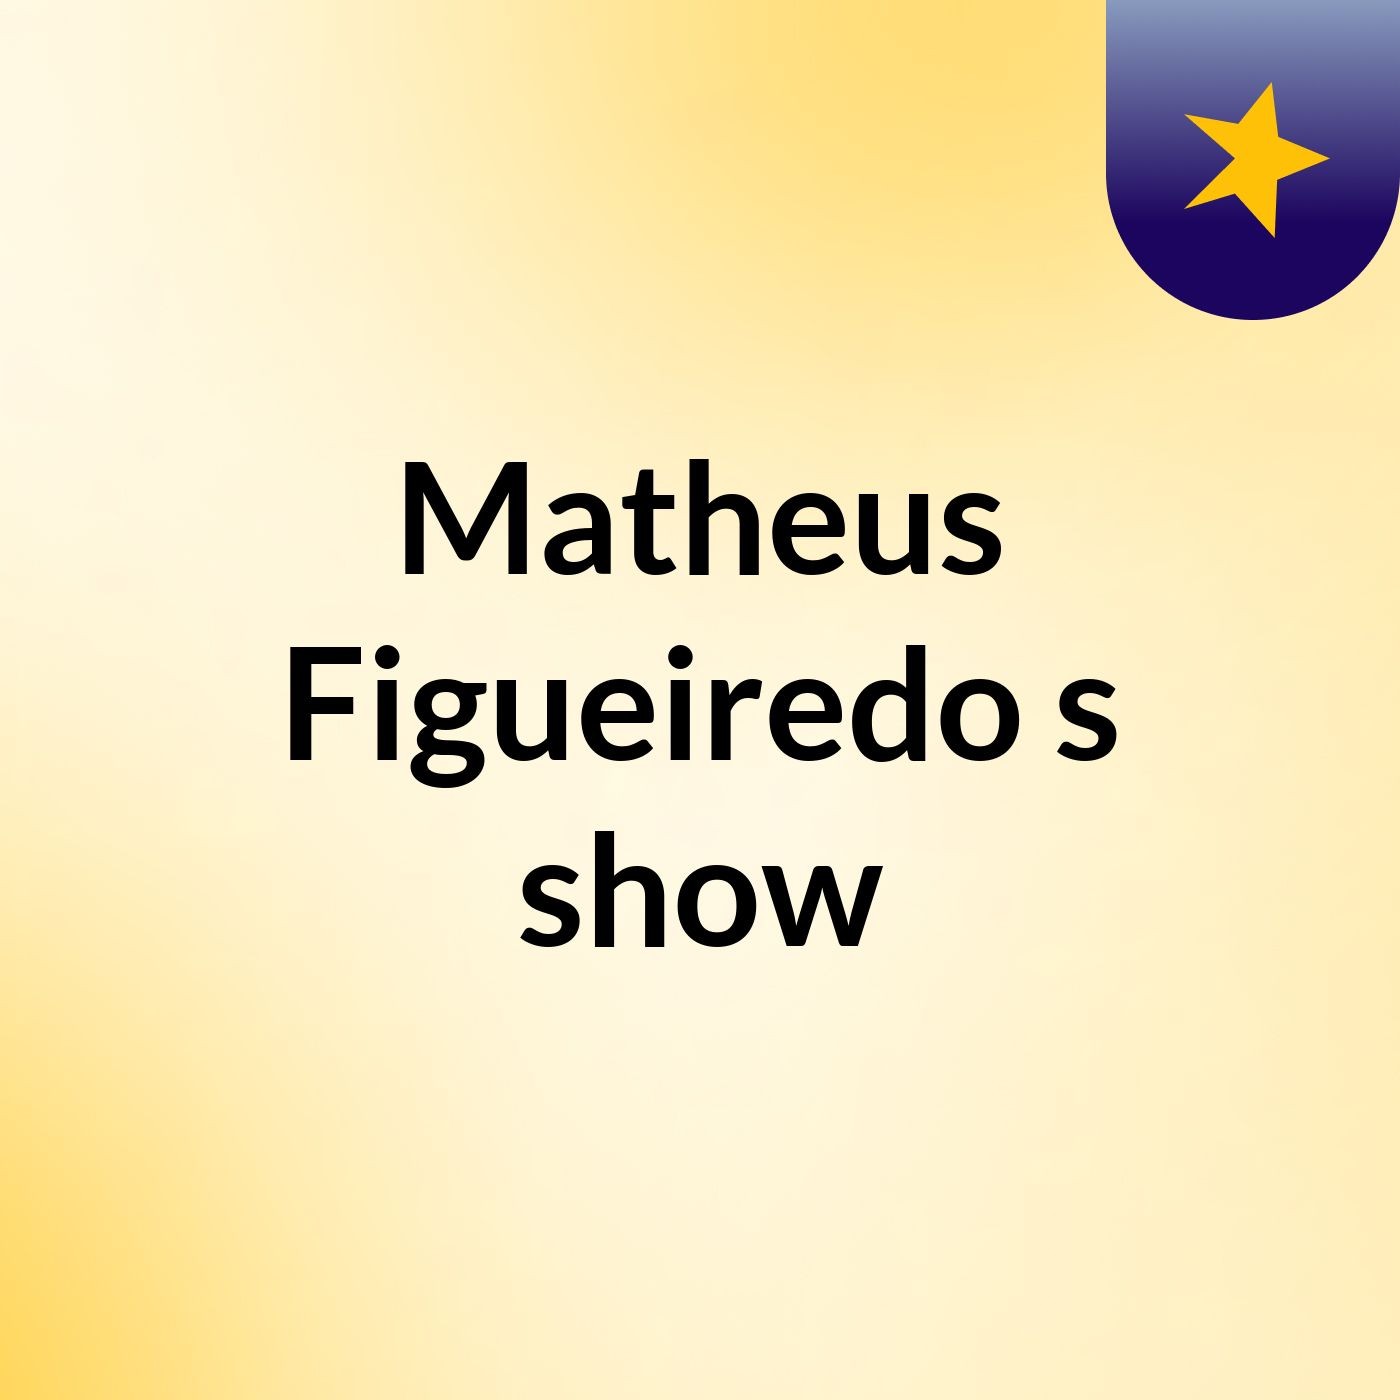 Matheus Figueiredo's show